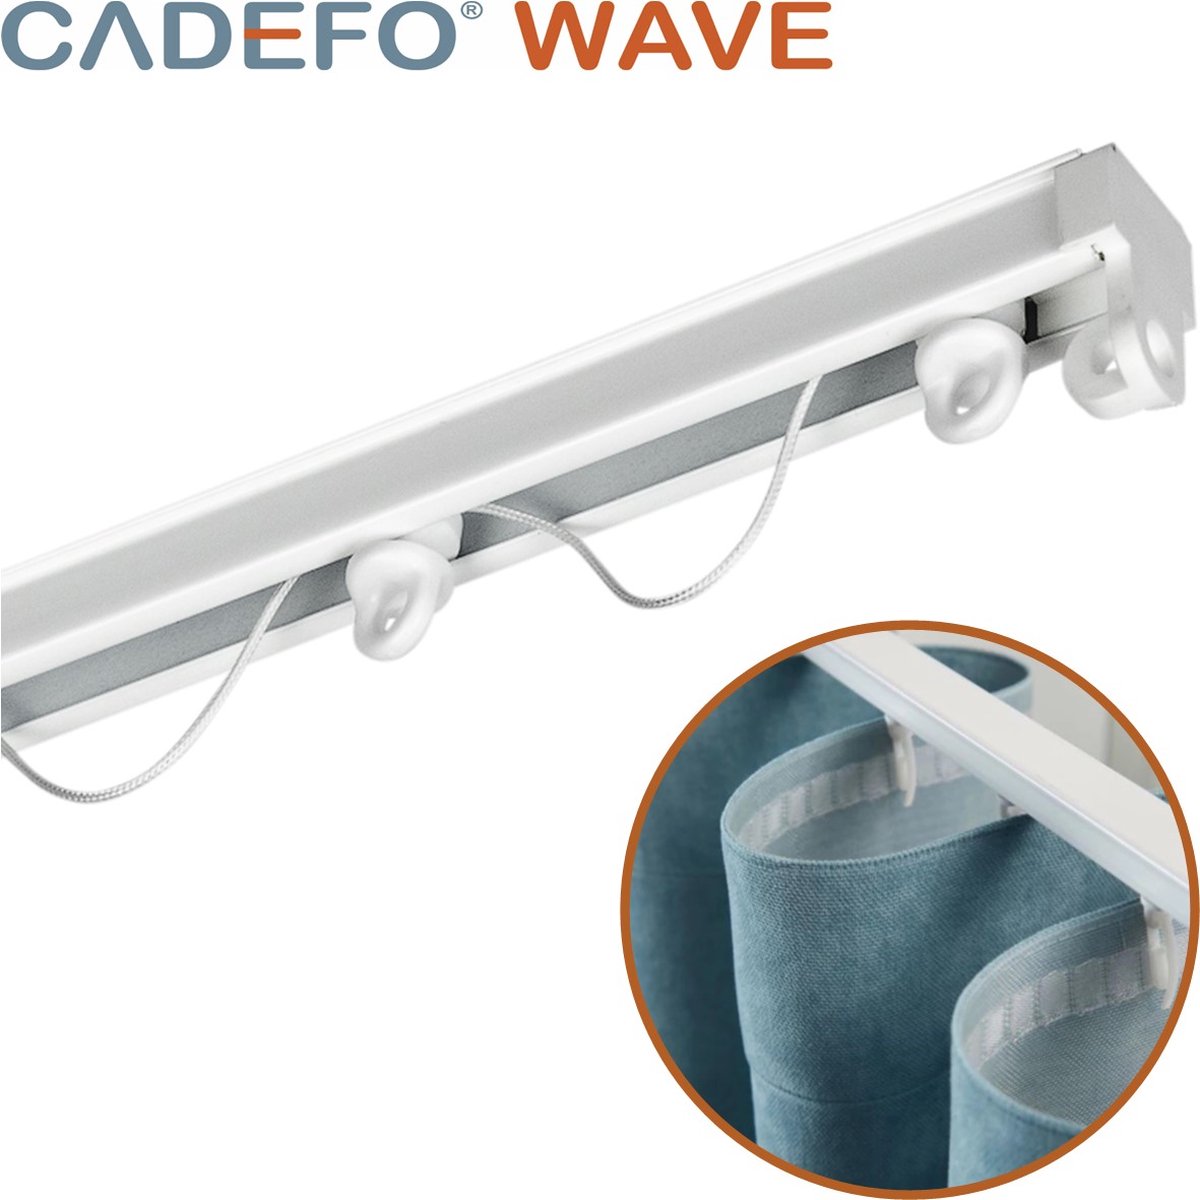 CADEFO WAVE (251 - 300 cm) Gordijnrails - Compleet op maat! - UIT 1 STUK - Leverbaar tot 6 meter - Plafondbevestiging - Lengte 291 cm